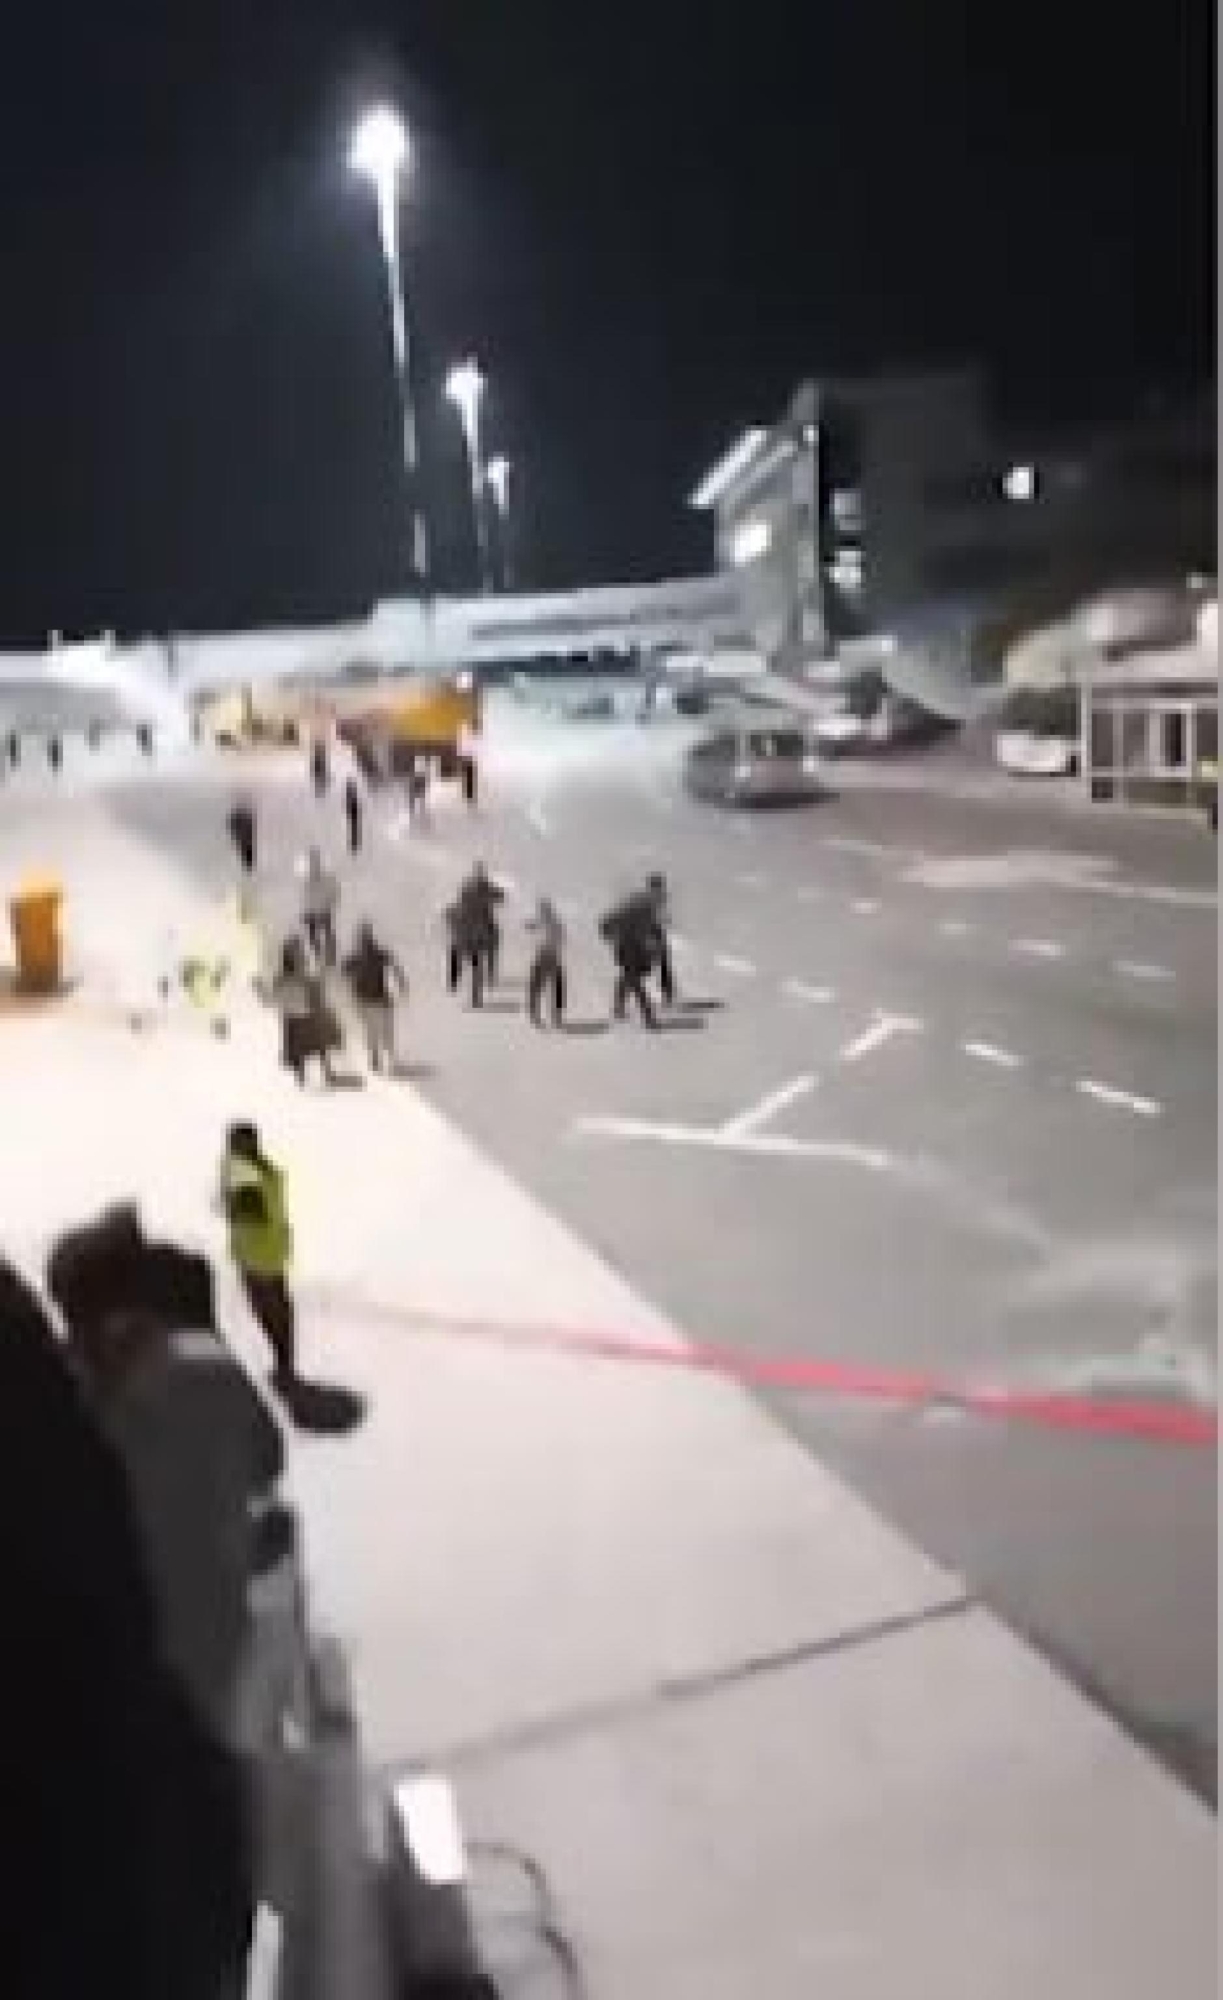 In un frame decine di manifestanti si sono riversate nell'aeroporto di Makhachkala, nella repubblica russa del Daghestan, per scagliarsi contro l'arrivo di un volo da Israele. Lo riferiscono media russi come Sota e Astra che mostrano anche i video dell'incursione, dove si vedono persone correre nel terminal sventolando bandiere palestinesi. +++ OSINT +++ ATTEZIONE LA FOTO NON PUO' ESSERE RIPRODOTTA SENZA L'AUTORIZZAZIONE DELLA FONTE CUI SI RINVIA +++ NPK +++